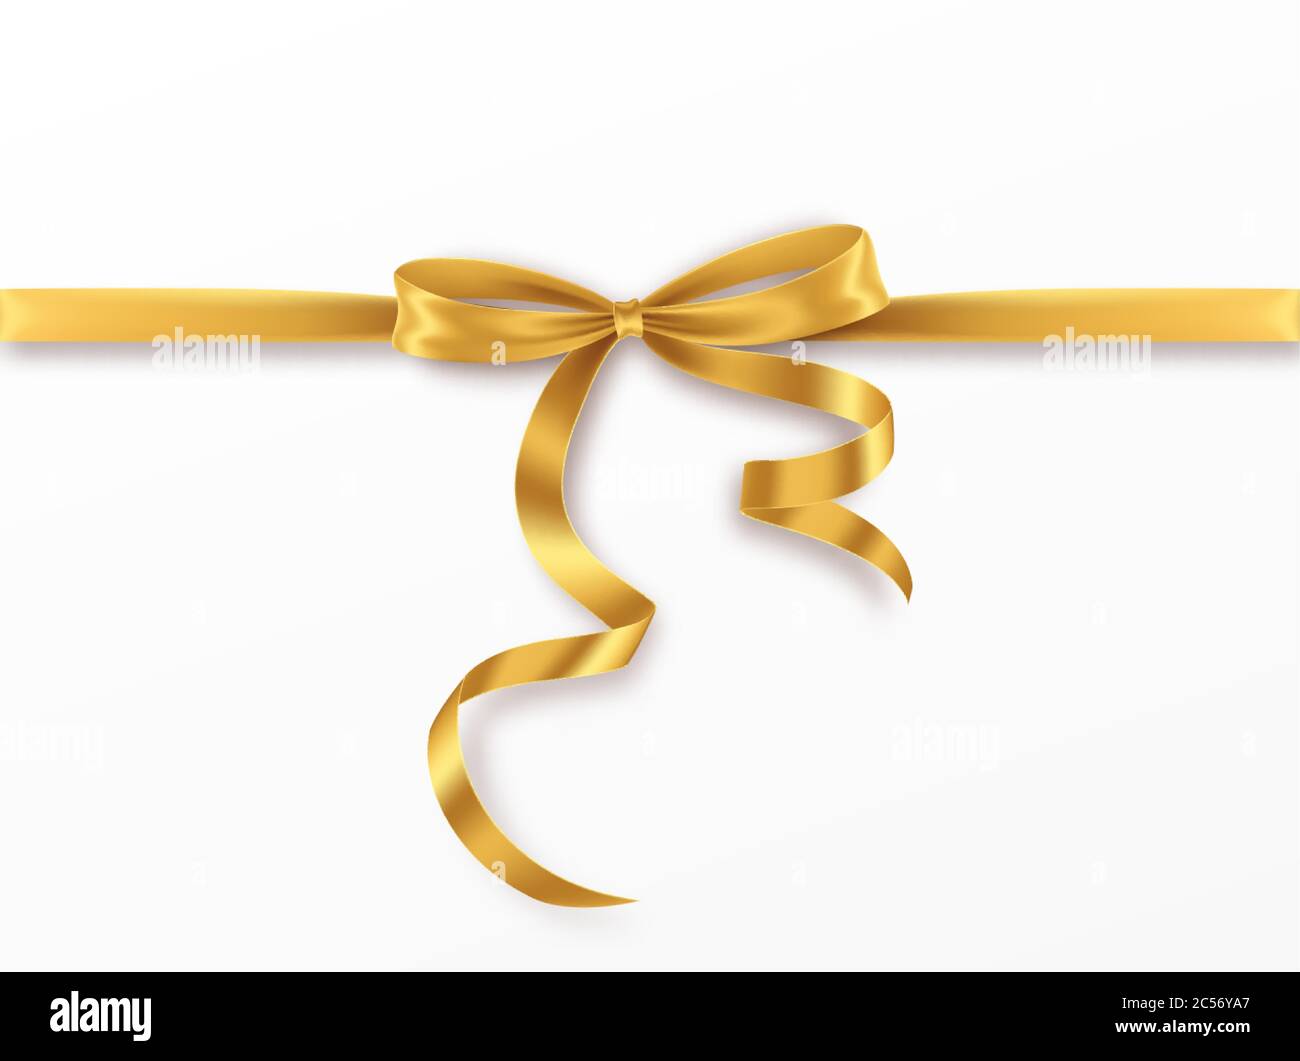 Noeud doré et ruban sur fond blanc. Noeud doré réaliste pour la décoration cadre, bordure. Illustration vectorielle Illustration de Vecteur